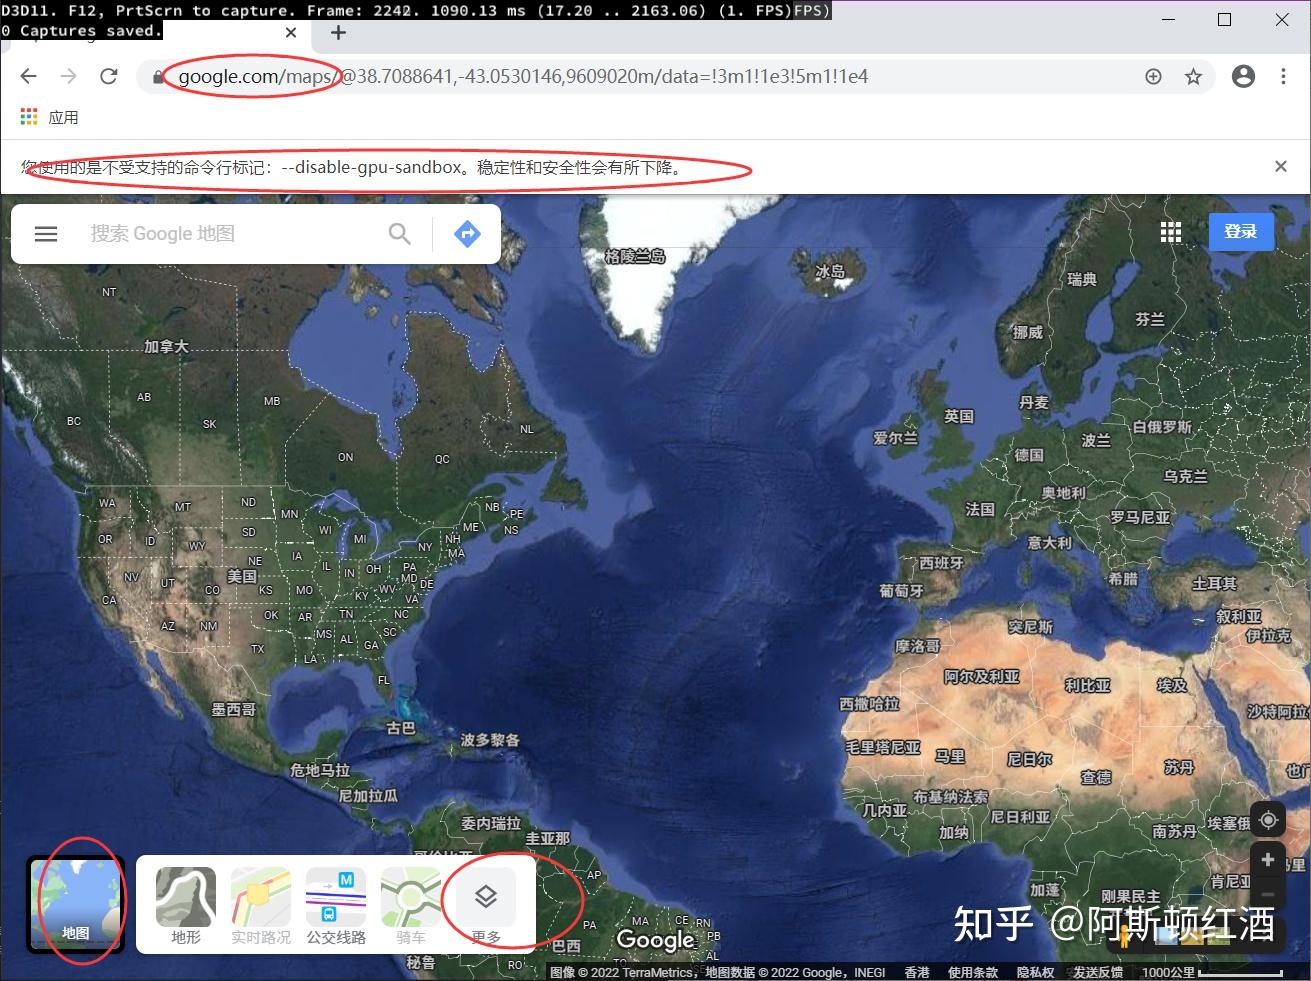 如何下载谷歌地球高程为TIF格式的文件_tif高程图下载-CSDN博客